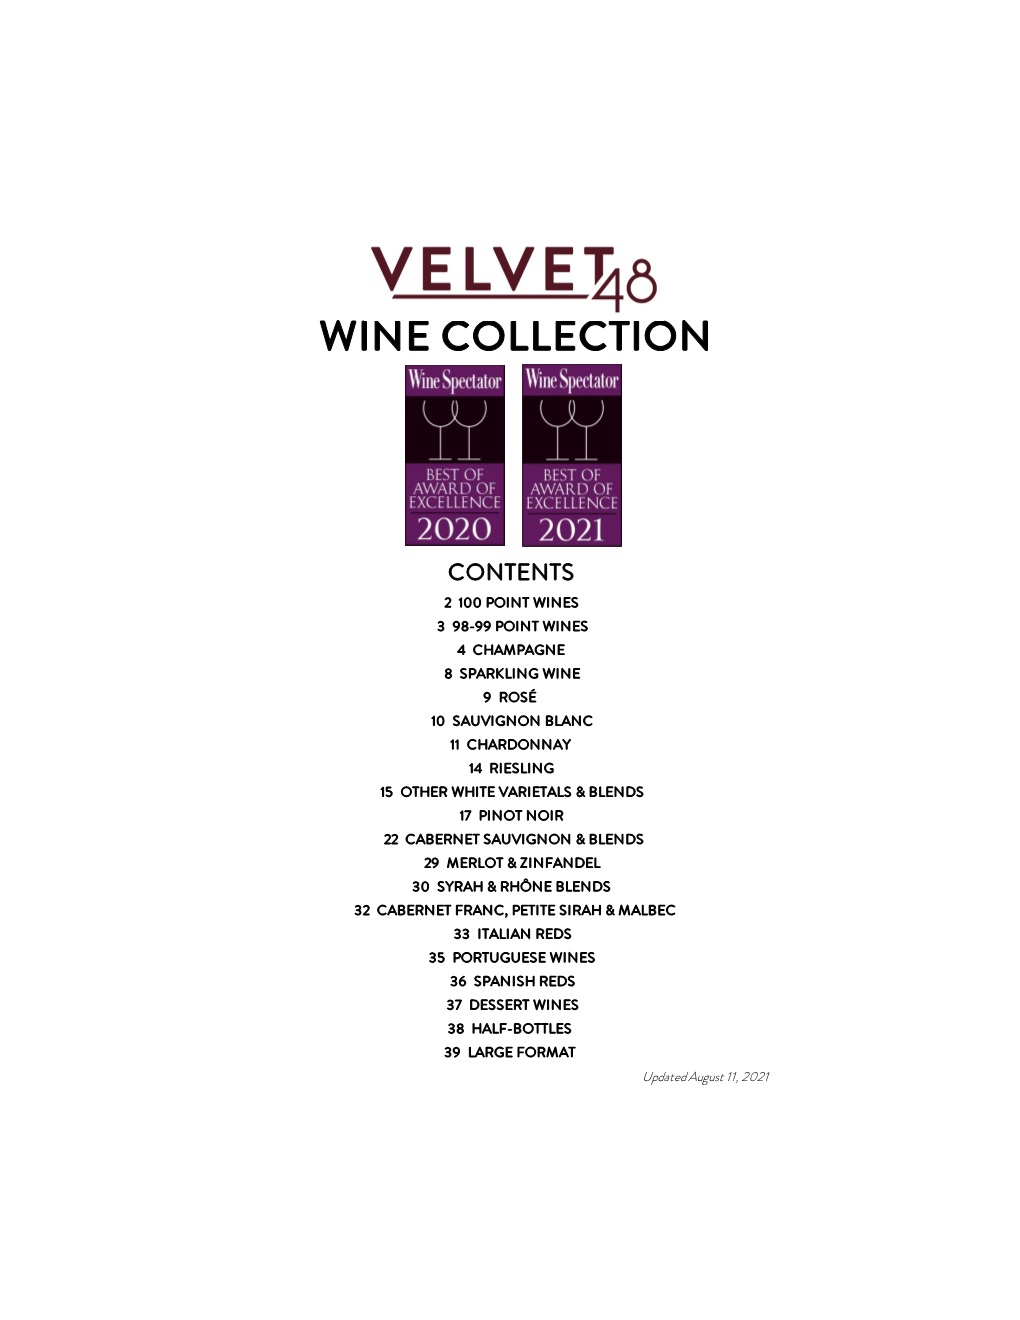 Velvet 48 Master Wine List JULY 2021-Web